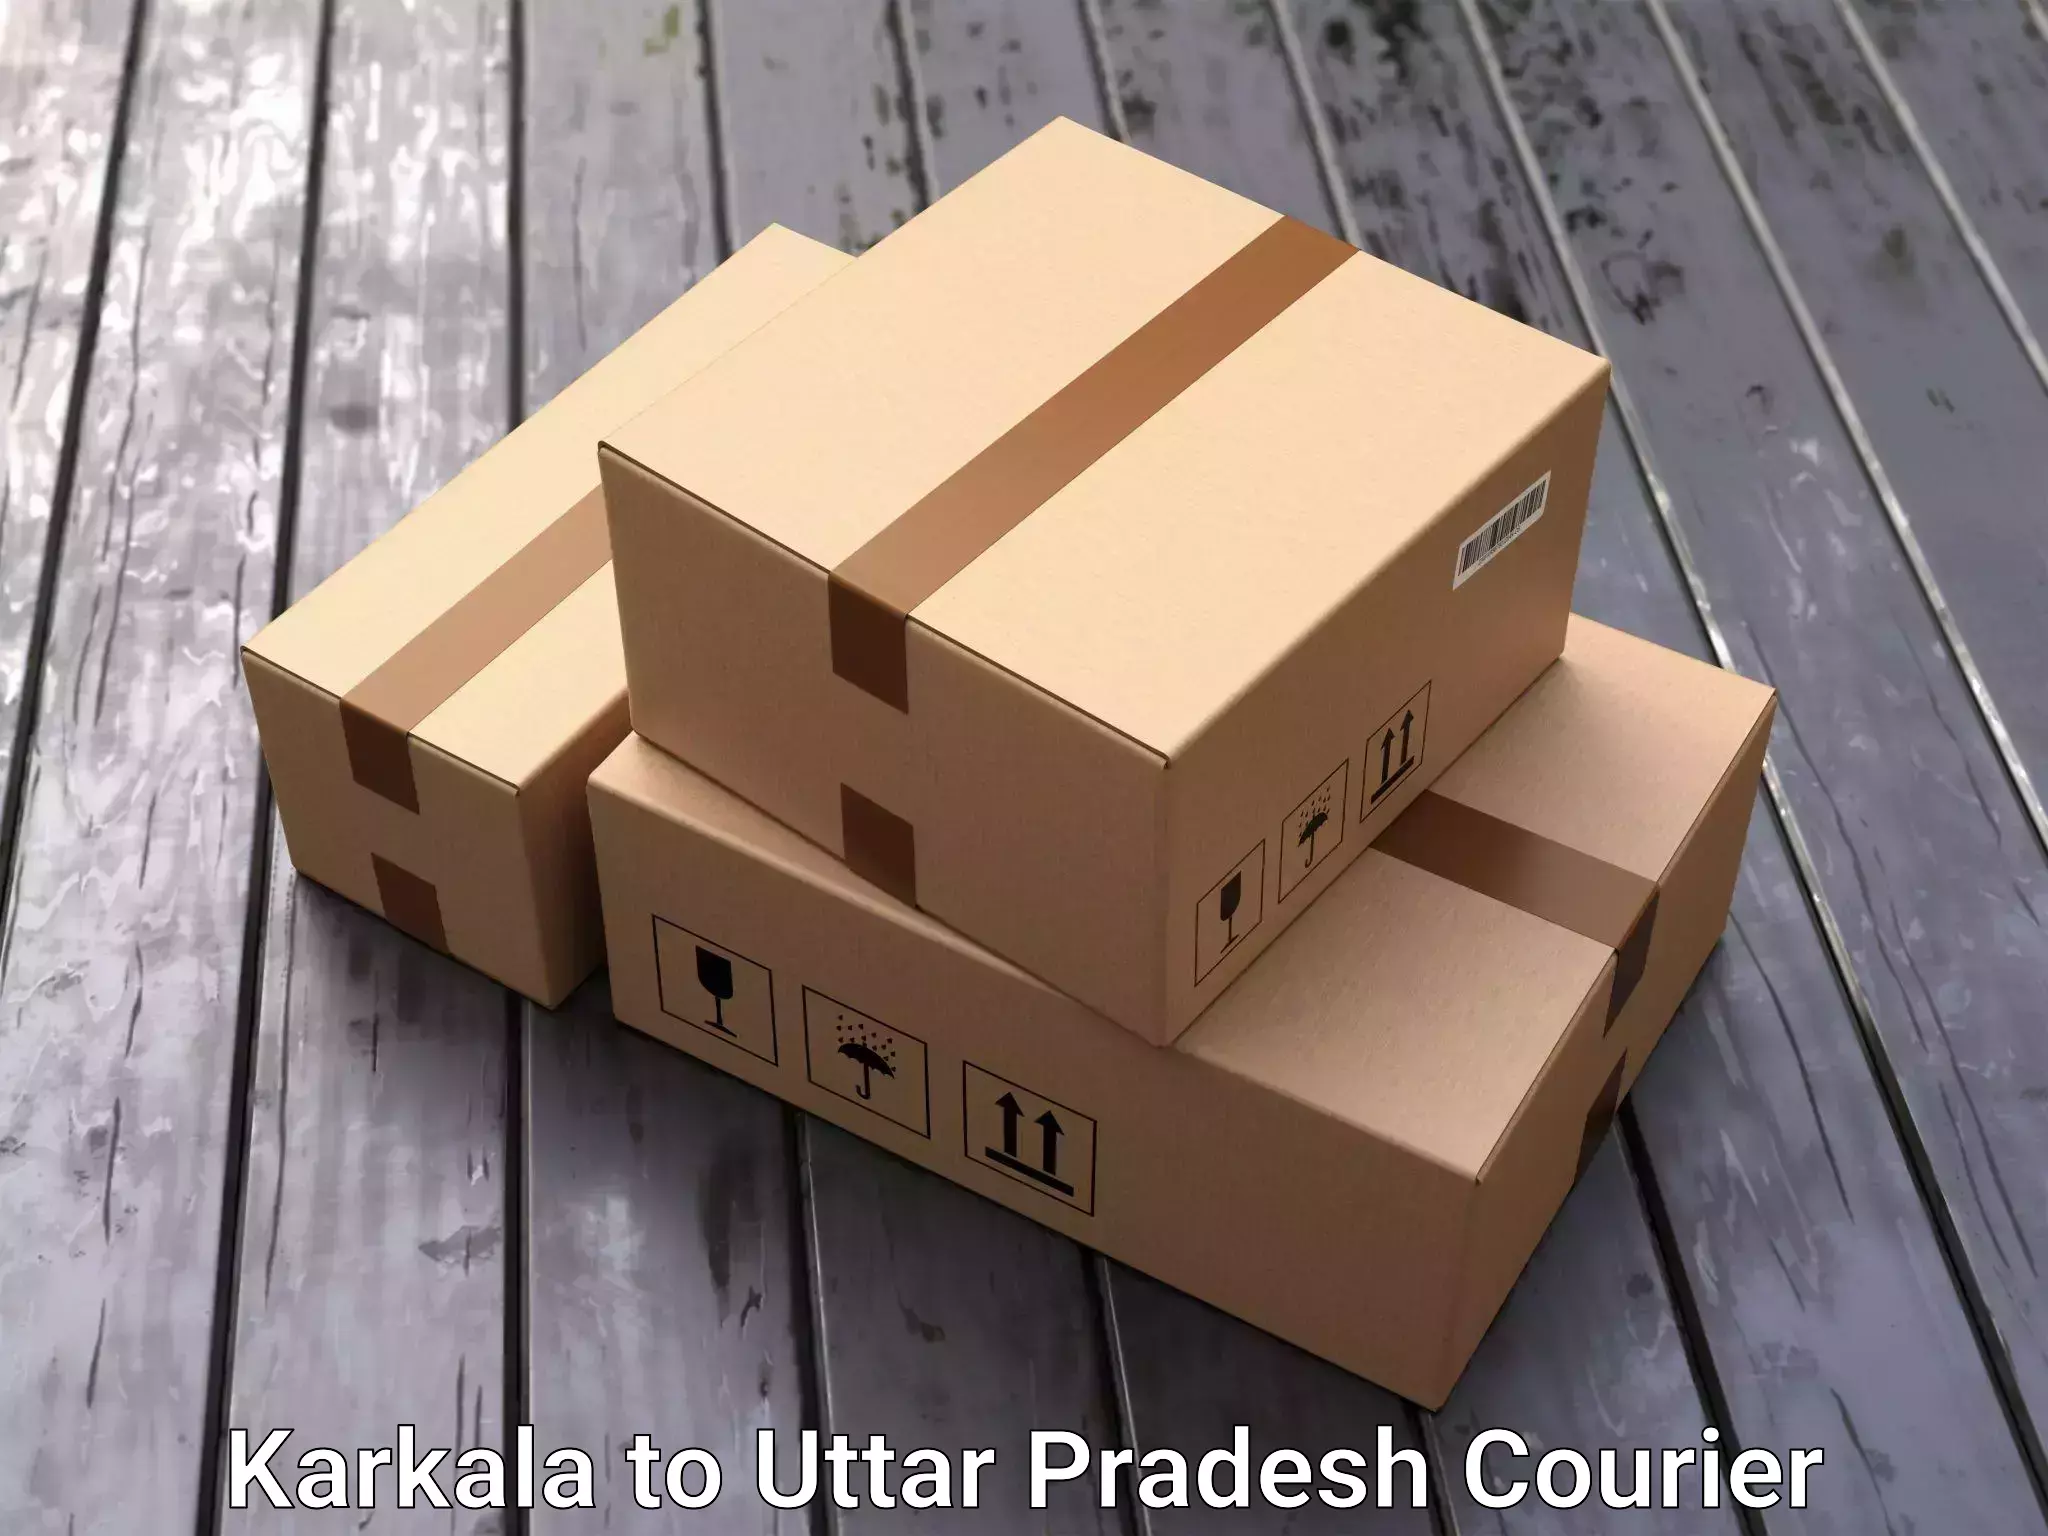 Full-service relocation Karkala to Uttar Pradesh